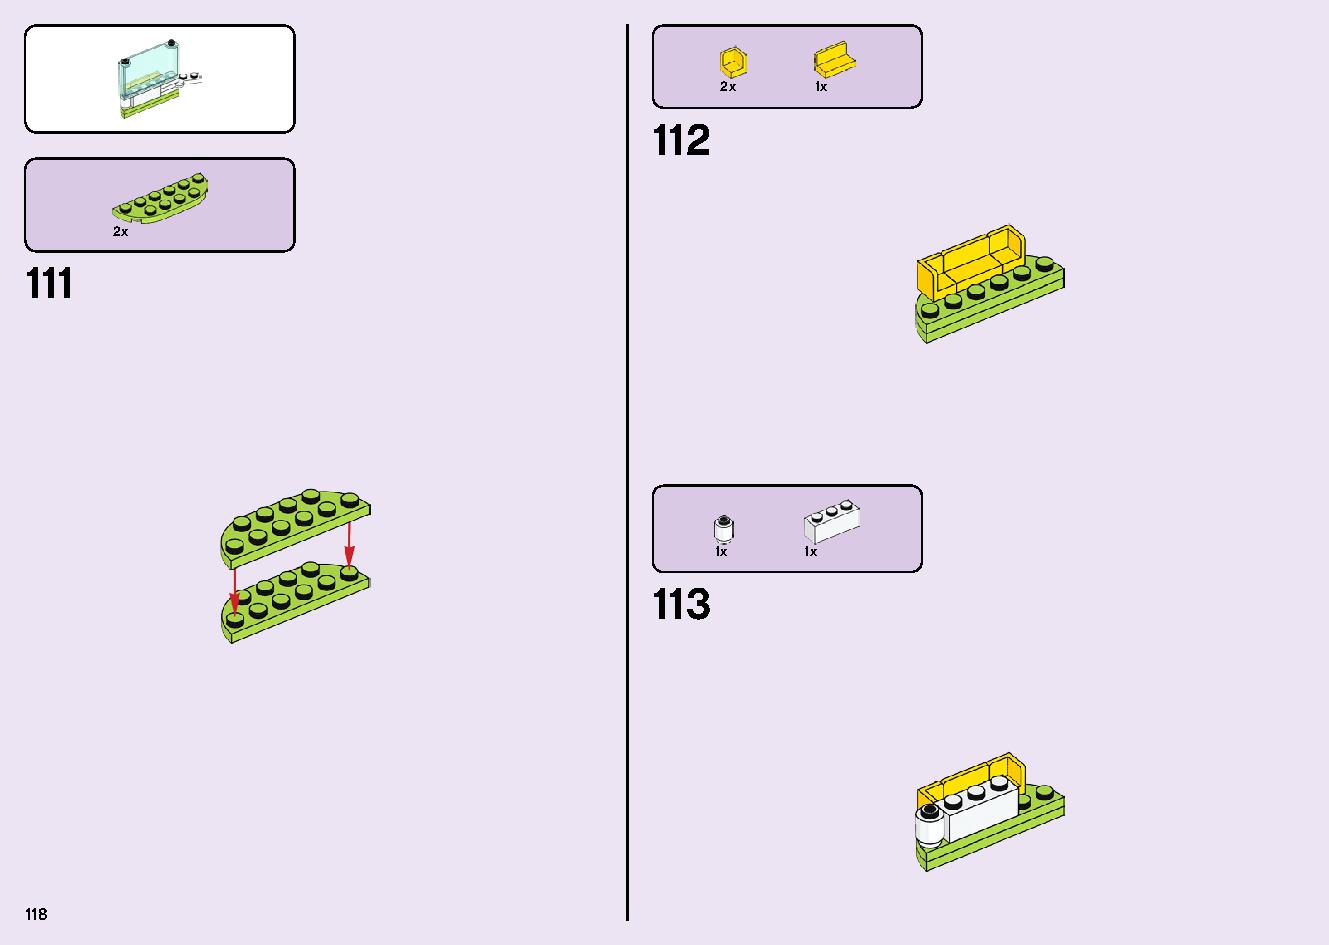 フレンズのうきうきハッピー・バス 41395 レゴの商品情報 レゴの説明書・組立方法 118 page